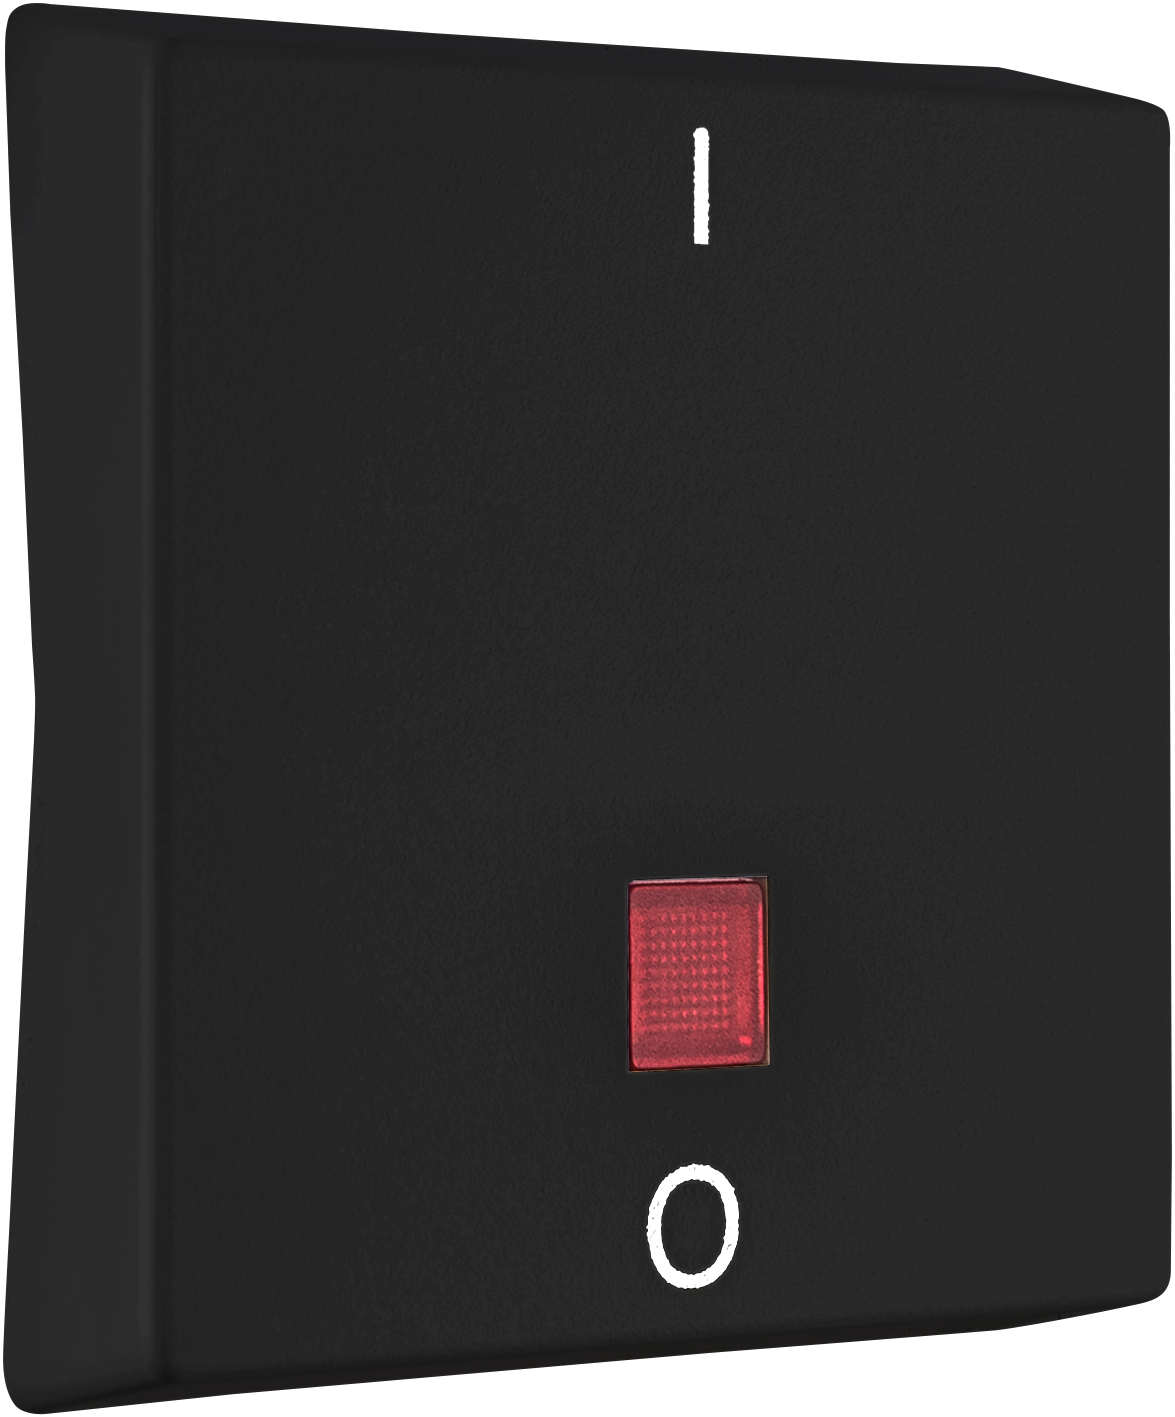 RESIST Flächenwippe "l-0" mit rotem Signalauge schwarz OPUS